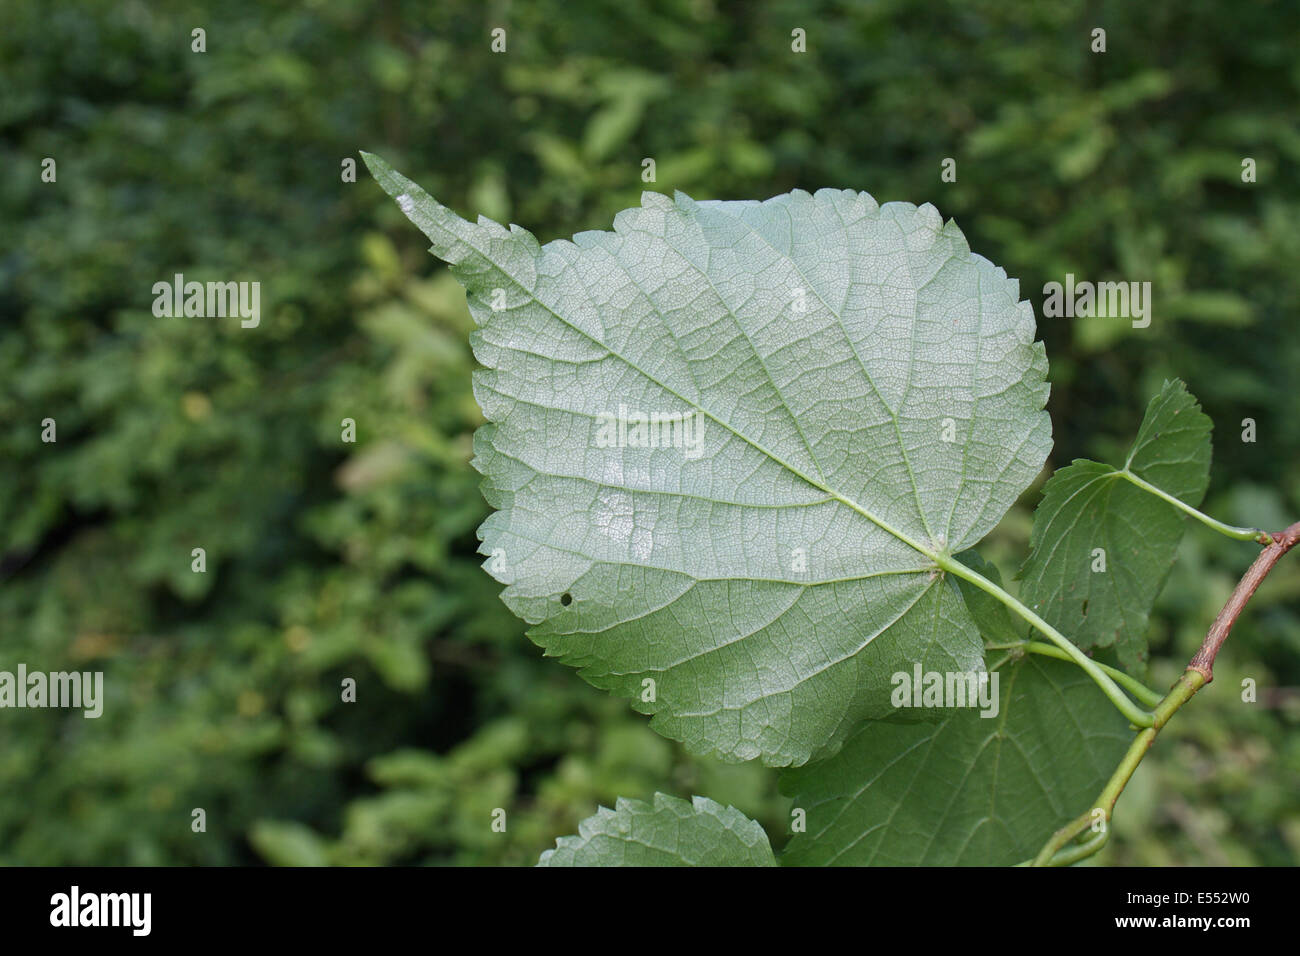 Kleinblättrige Linde (Tilia Cordata) Nahaufnahme der Unterseite, wächst in Wäldern, Pfarrhaus Plantage, Mendlesham, Suffolk, England, Juli Stockfoto